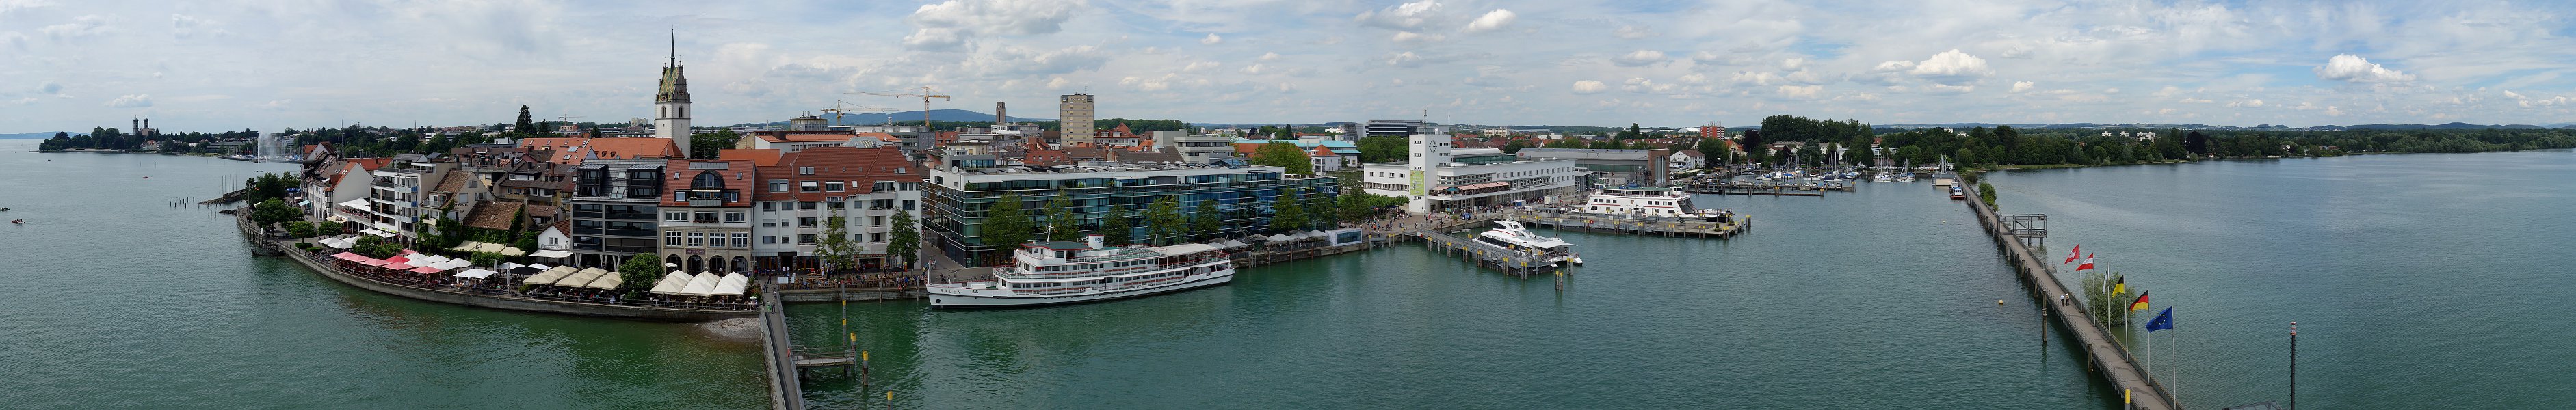 Moleturm Friedrichshafen